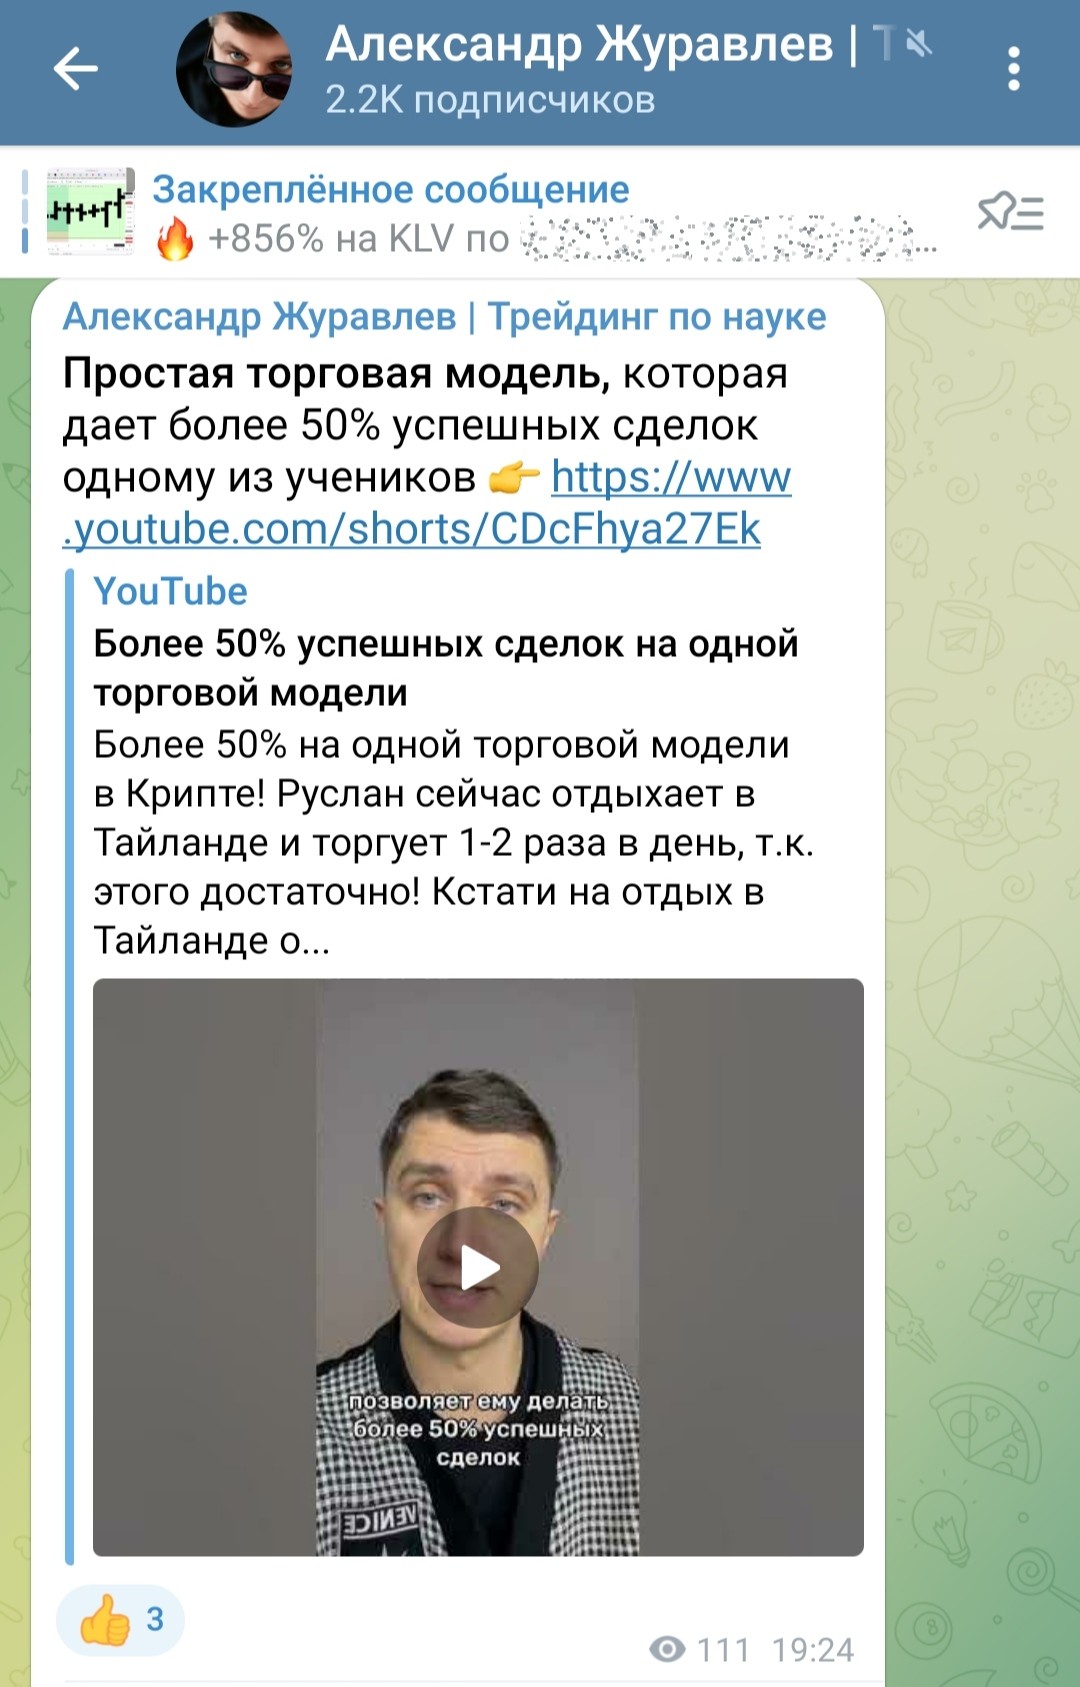 Обзор телеграм канала Александр Журавлев